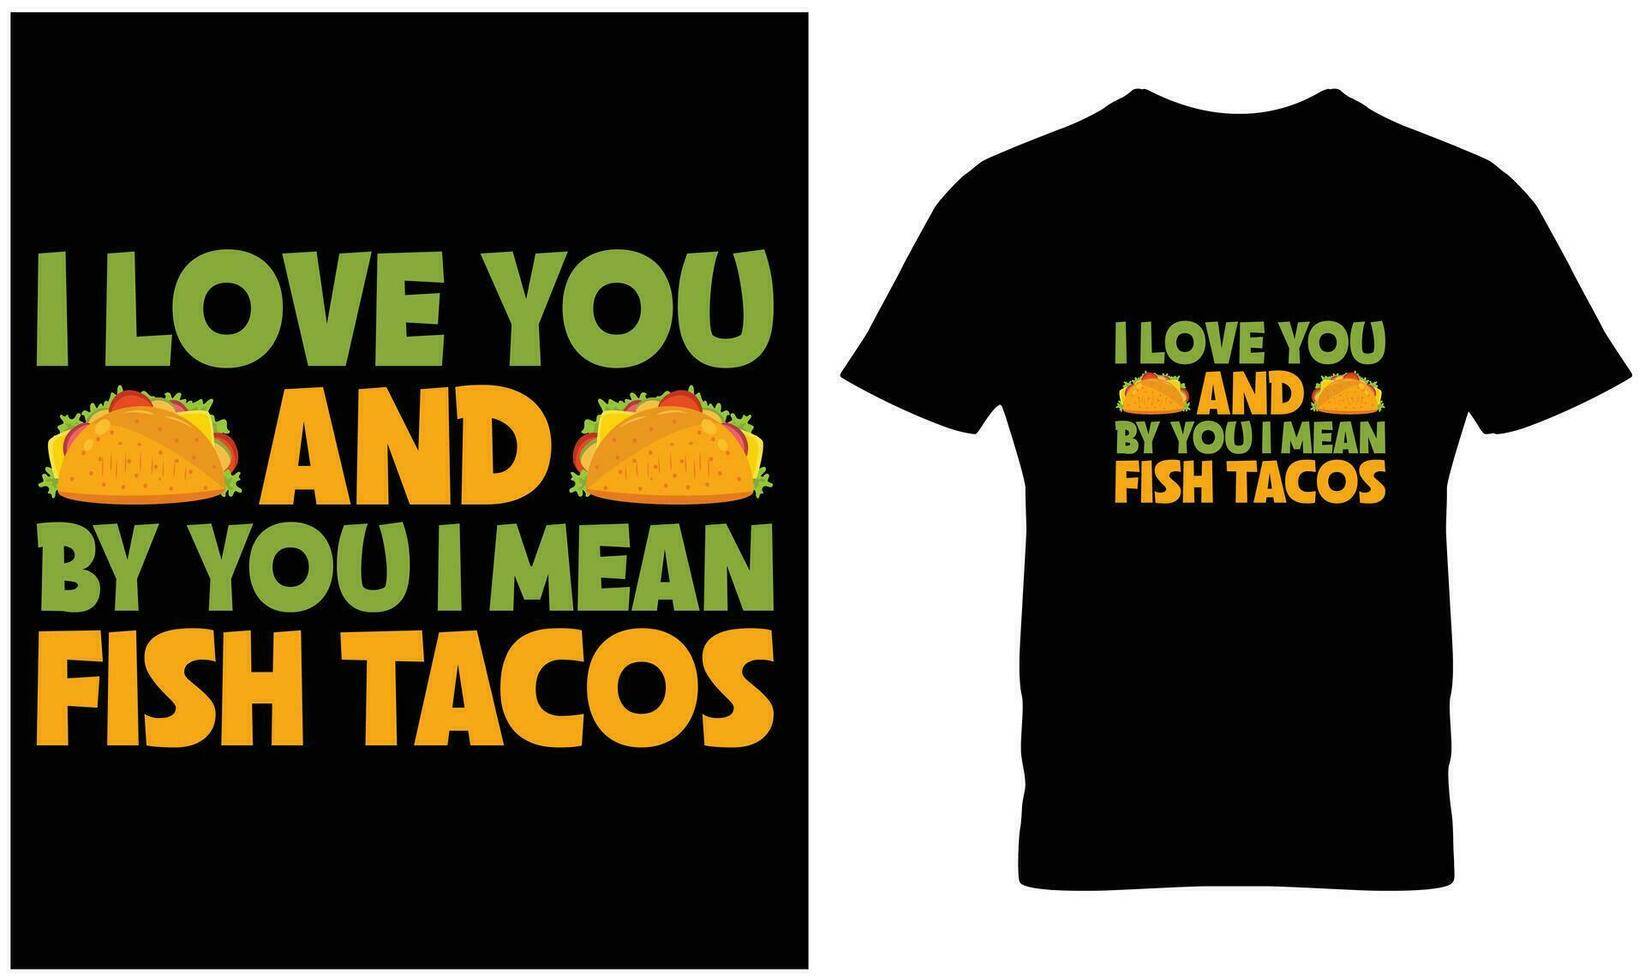 tacos T-shirt conception vecteur graphique.